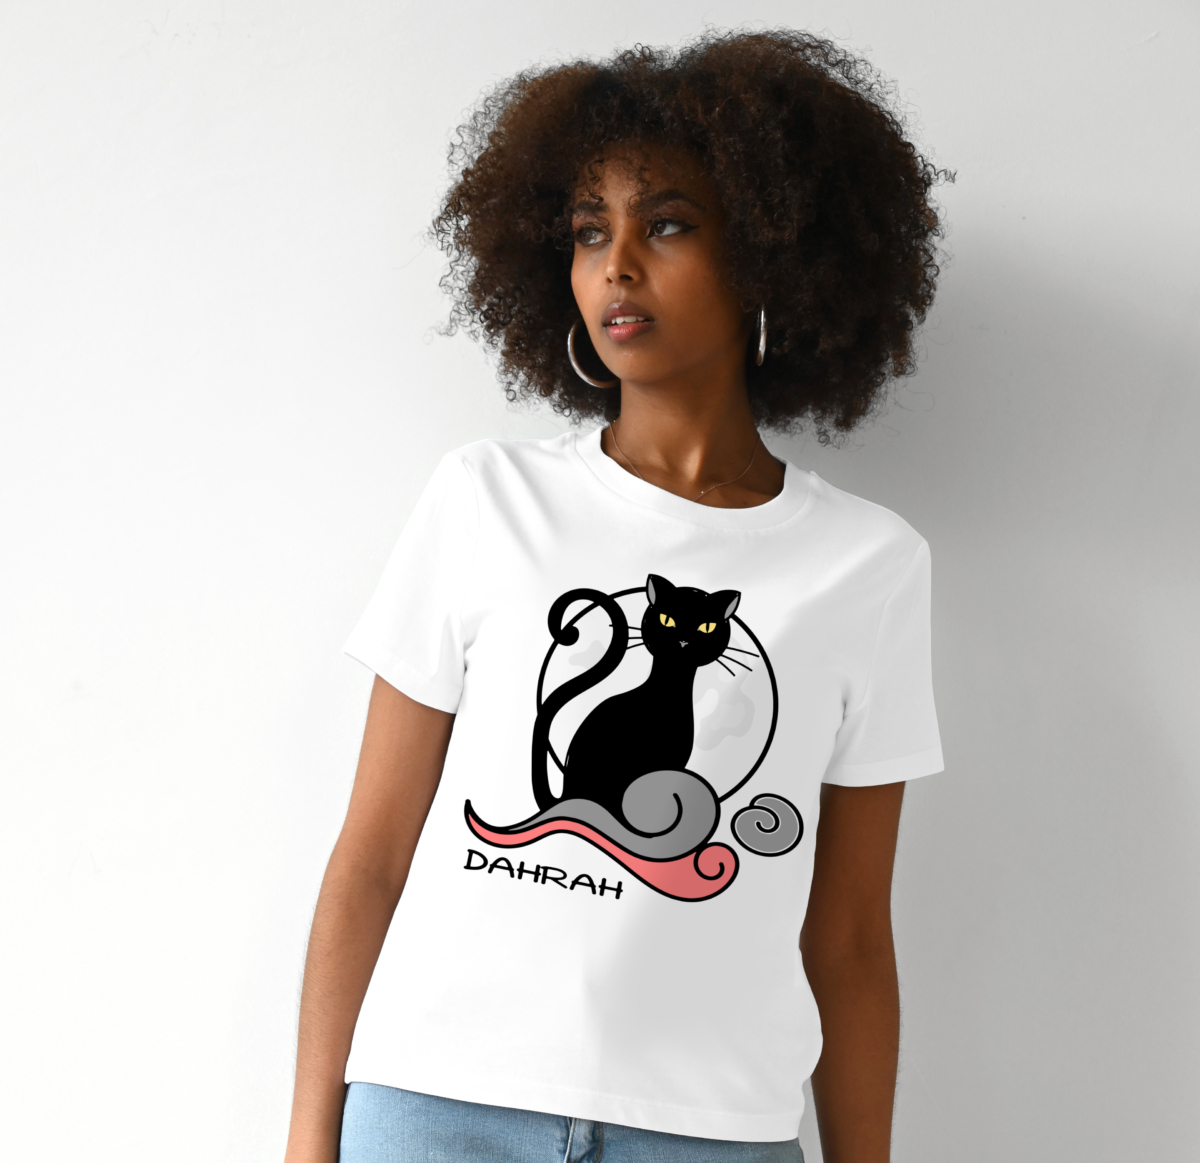 Organic cotton T-shirt with print of a black cat by Dahrah Darah.